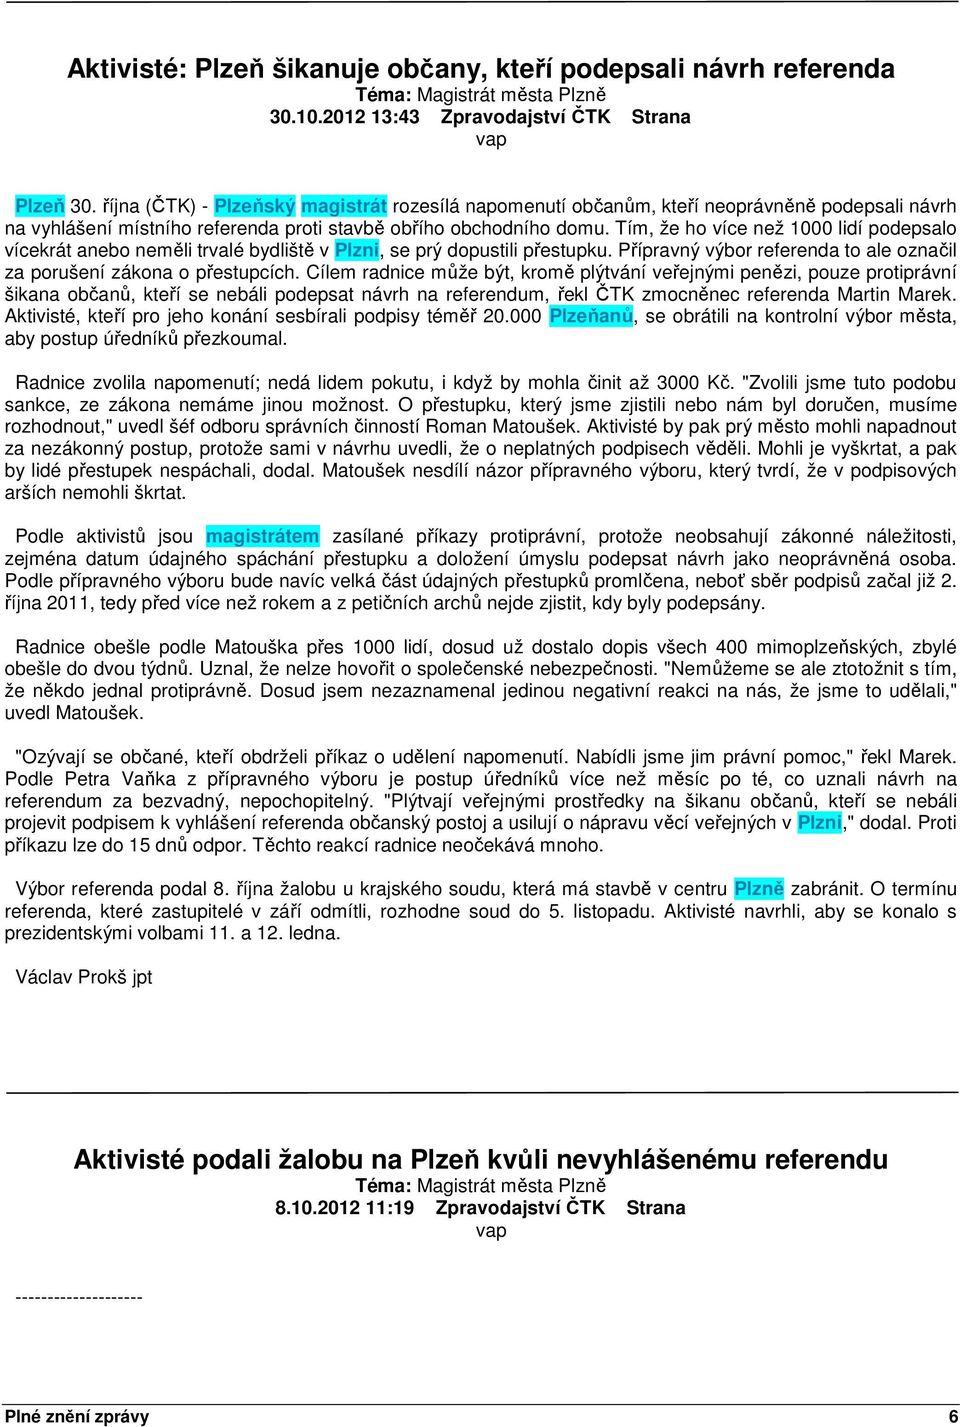 Tím, že ho více než 1000 lidí podepsalo vícekrát anebo neměli trvalé bydliště v Plzni, se prý dopustili přestupku. Přípravný výbor referenda to ale označil za porušení zákona o přestupcích.